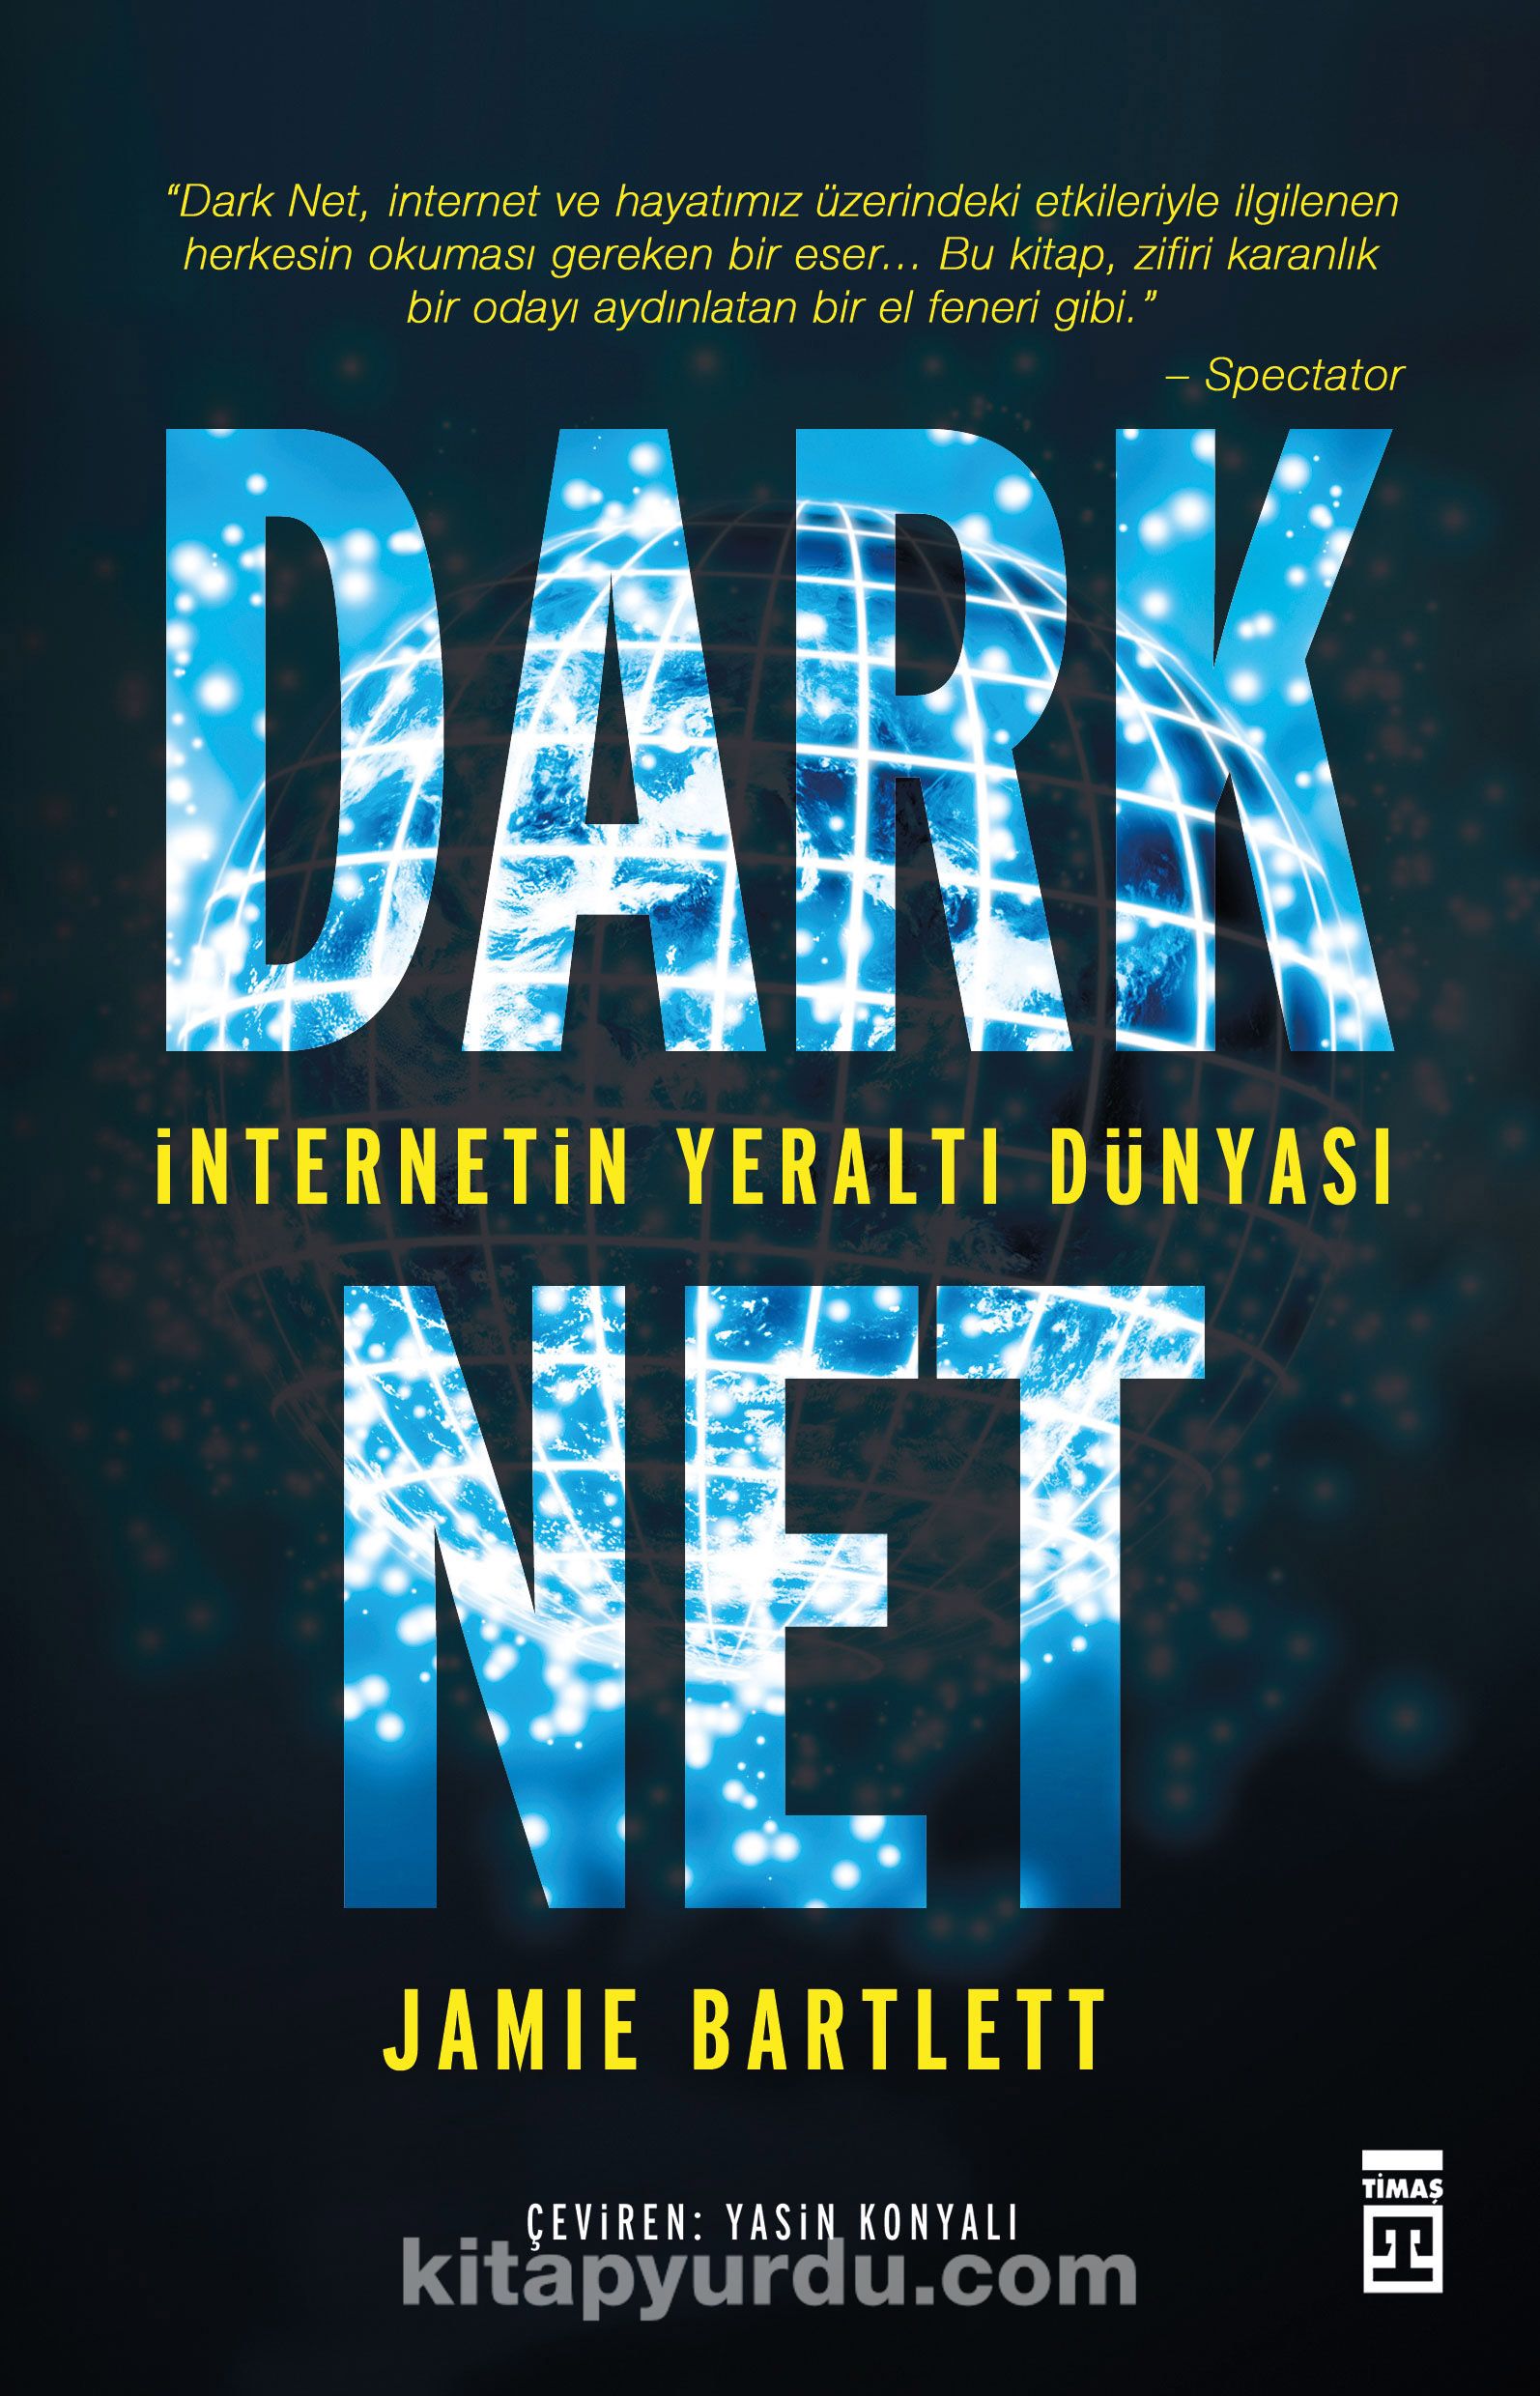 Dark Net & İnternetin Yeraltı Dünyası